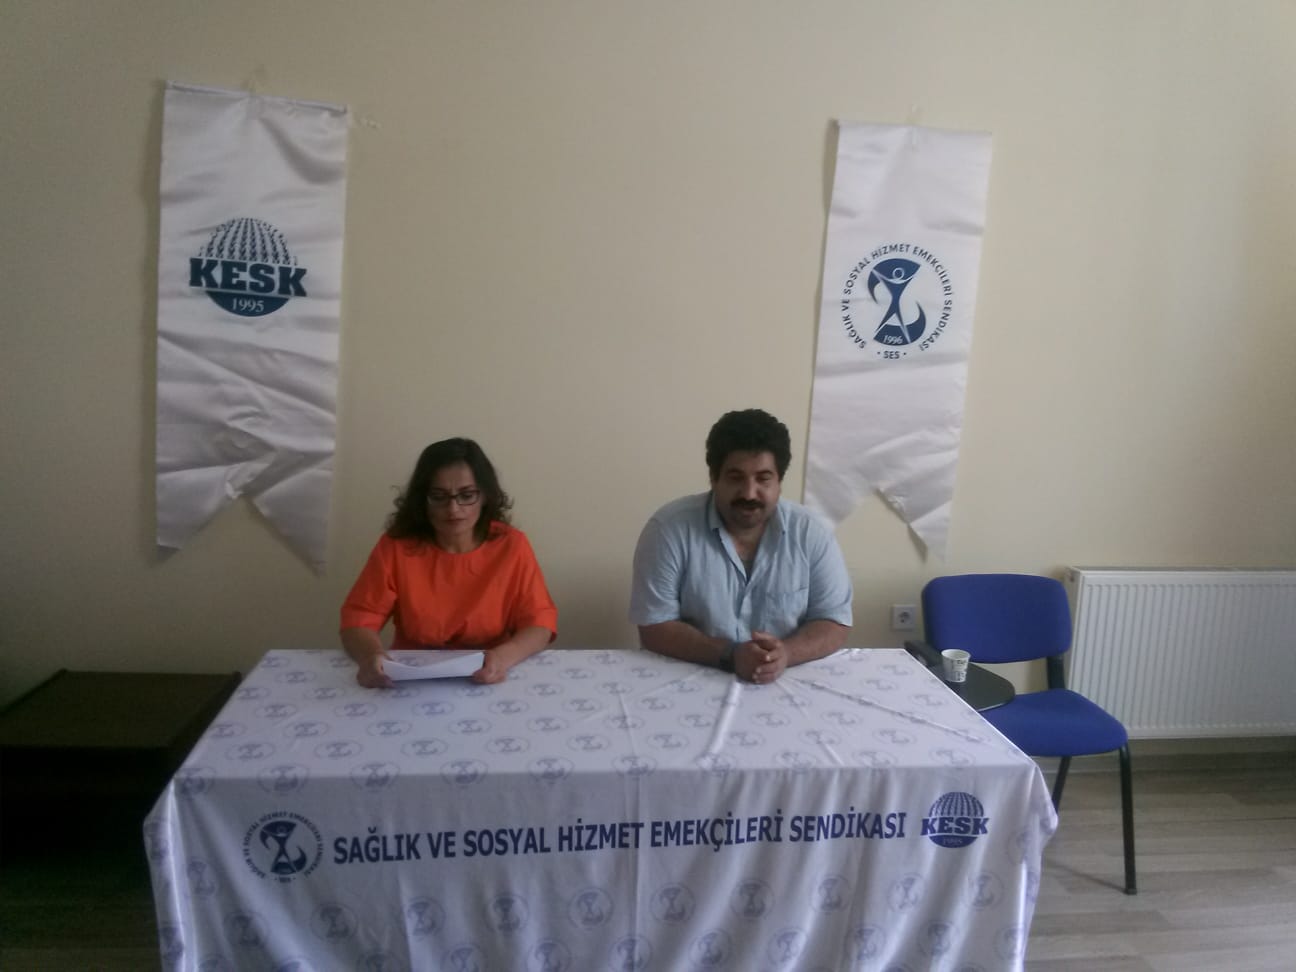 İzmir Şubemiz Sağlık Emekçilerinin “Normalleşme” Sürecindeki Taleplerini Açıkladı